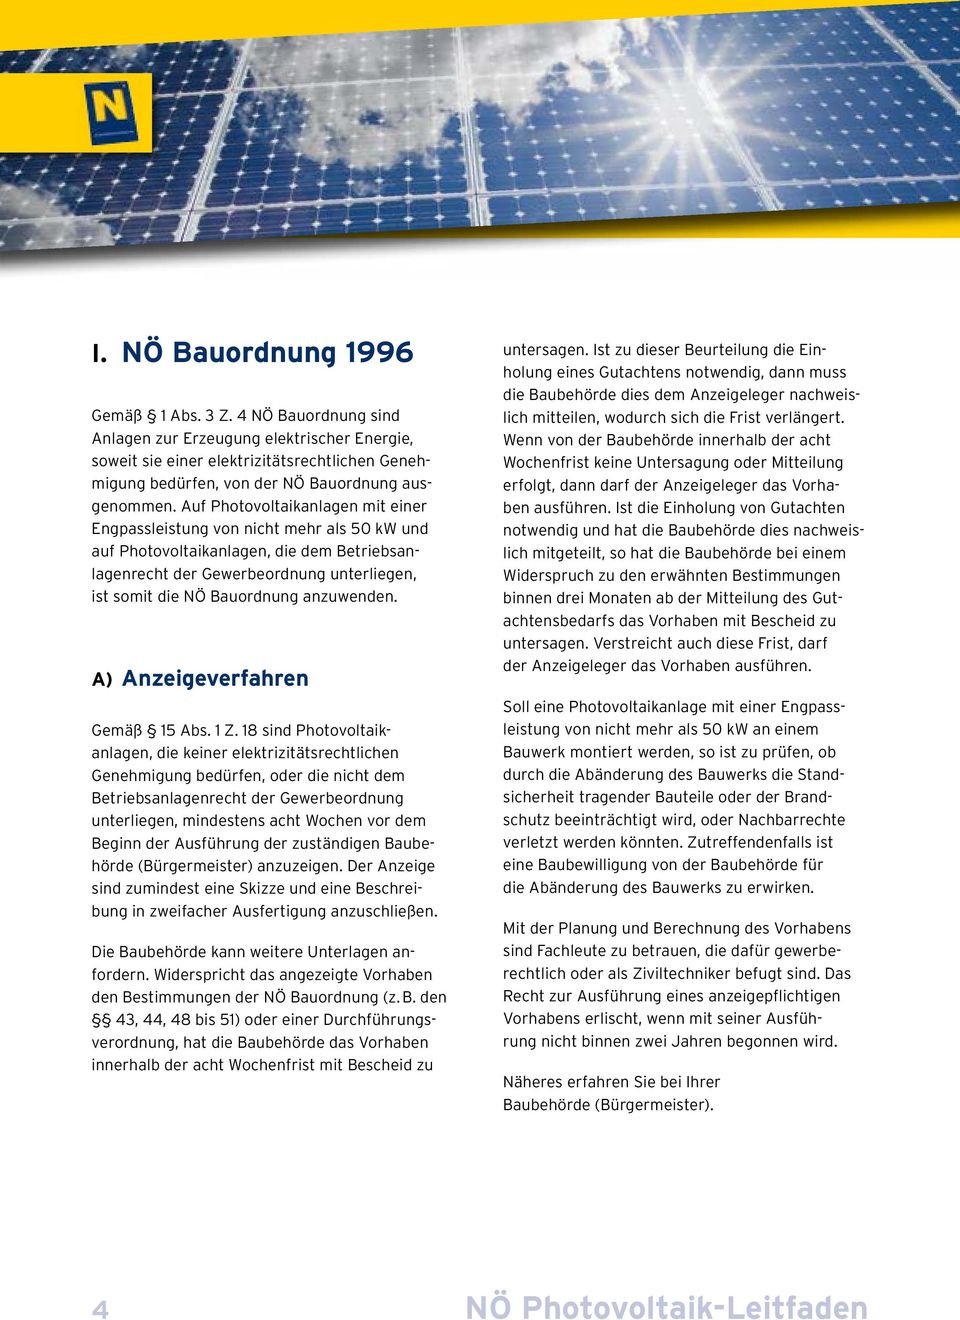 Auf Photovoltaikanlagen mit einer Engpassleistung von nicht mehr als 50 kw und auf Photovoltaikanlagen, die dem Betriebsanlagenrecht der Gewerbeordnung unterliegen, ist somit die NÖ Bauordnung